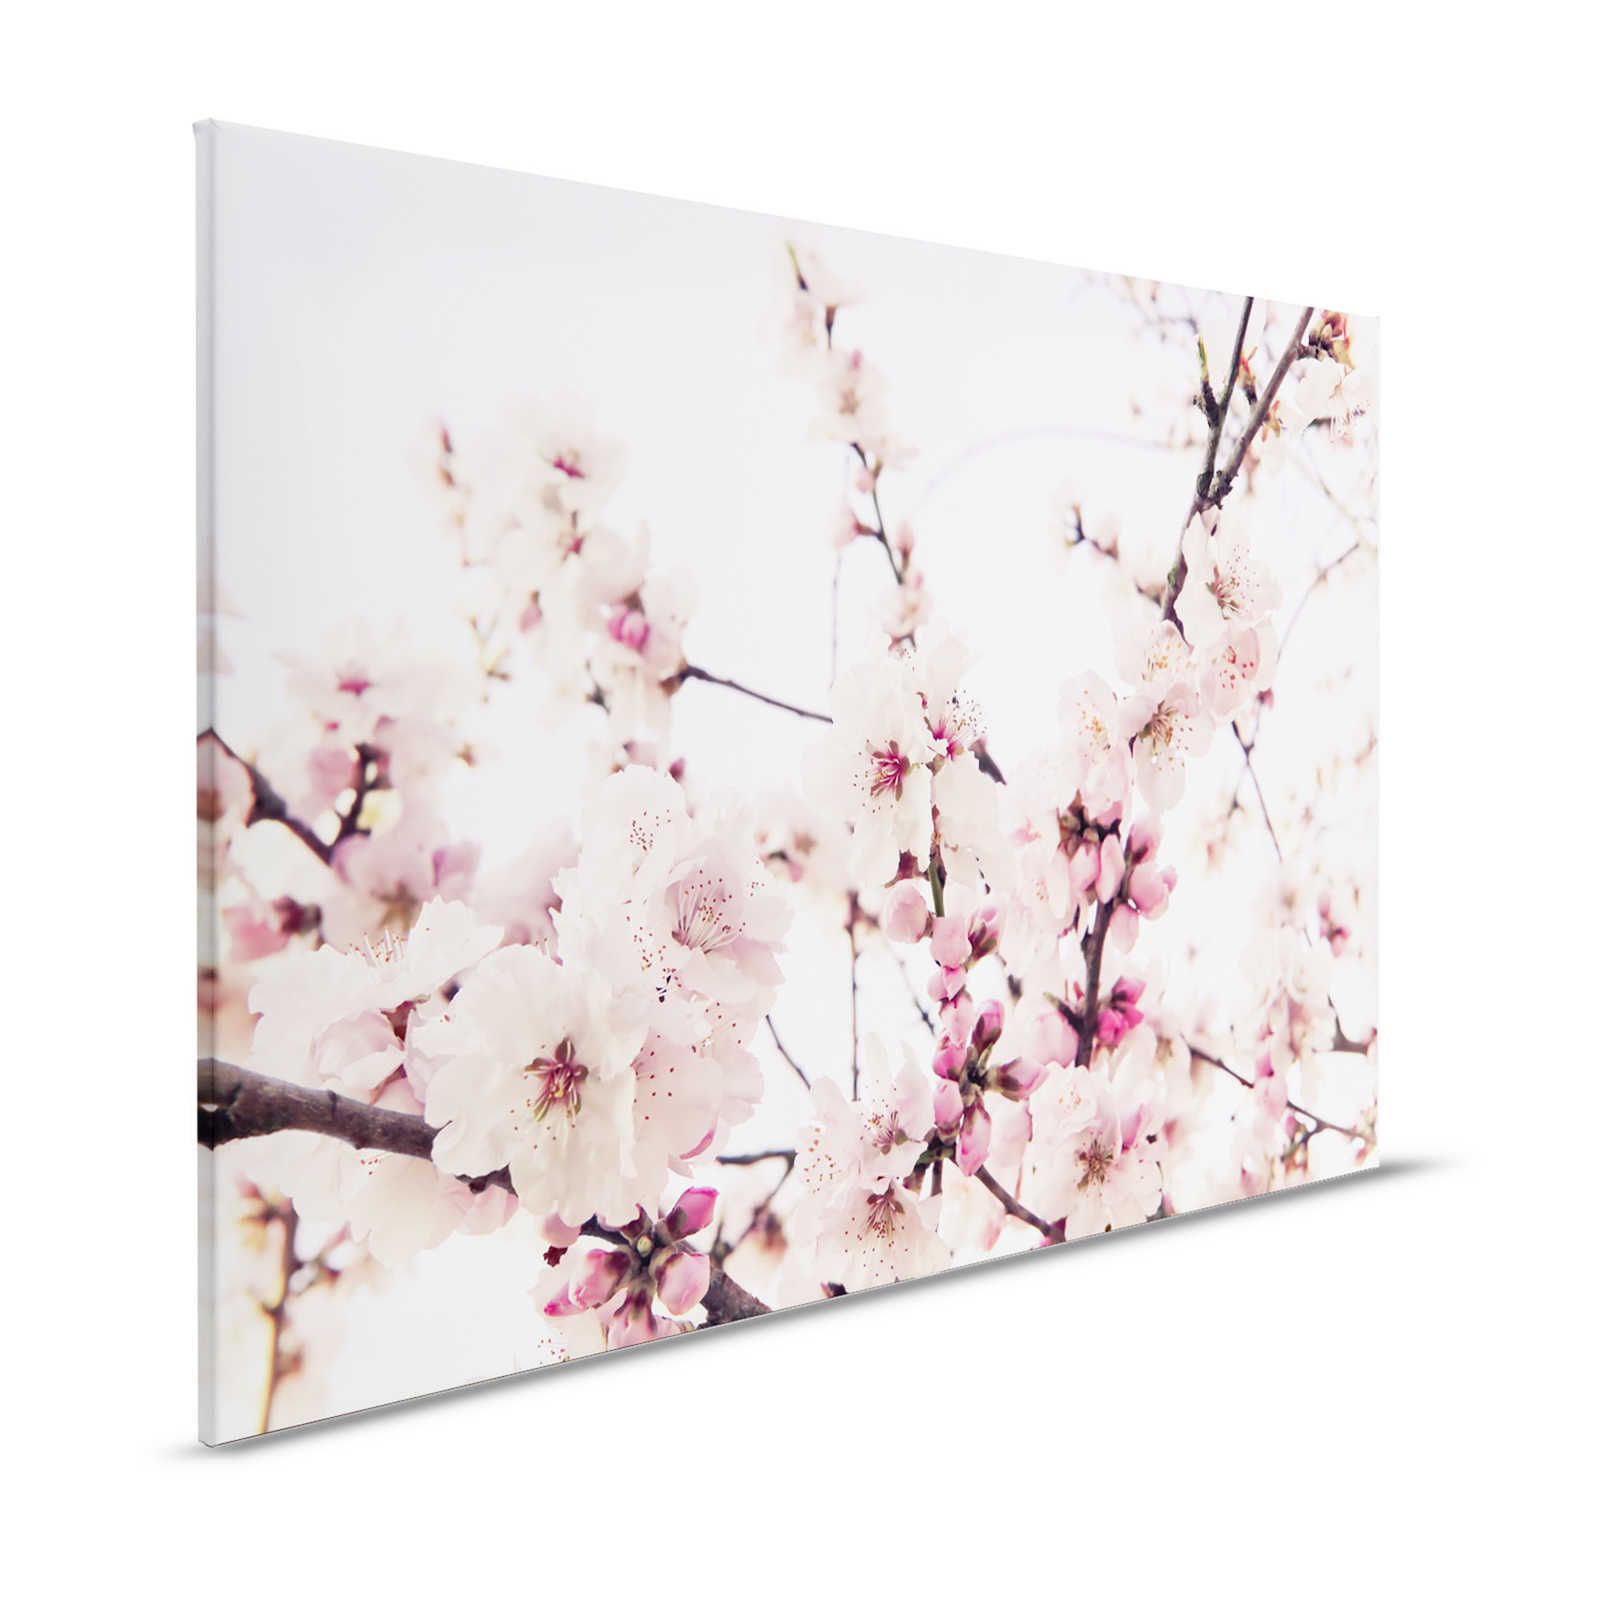 Pittura su tela della natura con fiori di ciliegio - 1,20 m x 0,80 m
